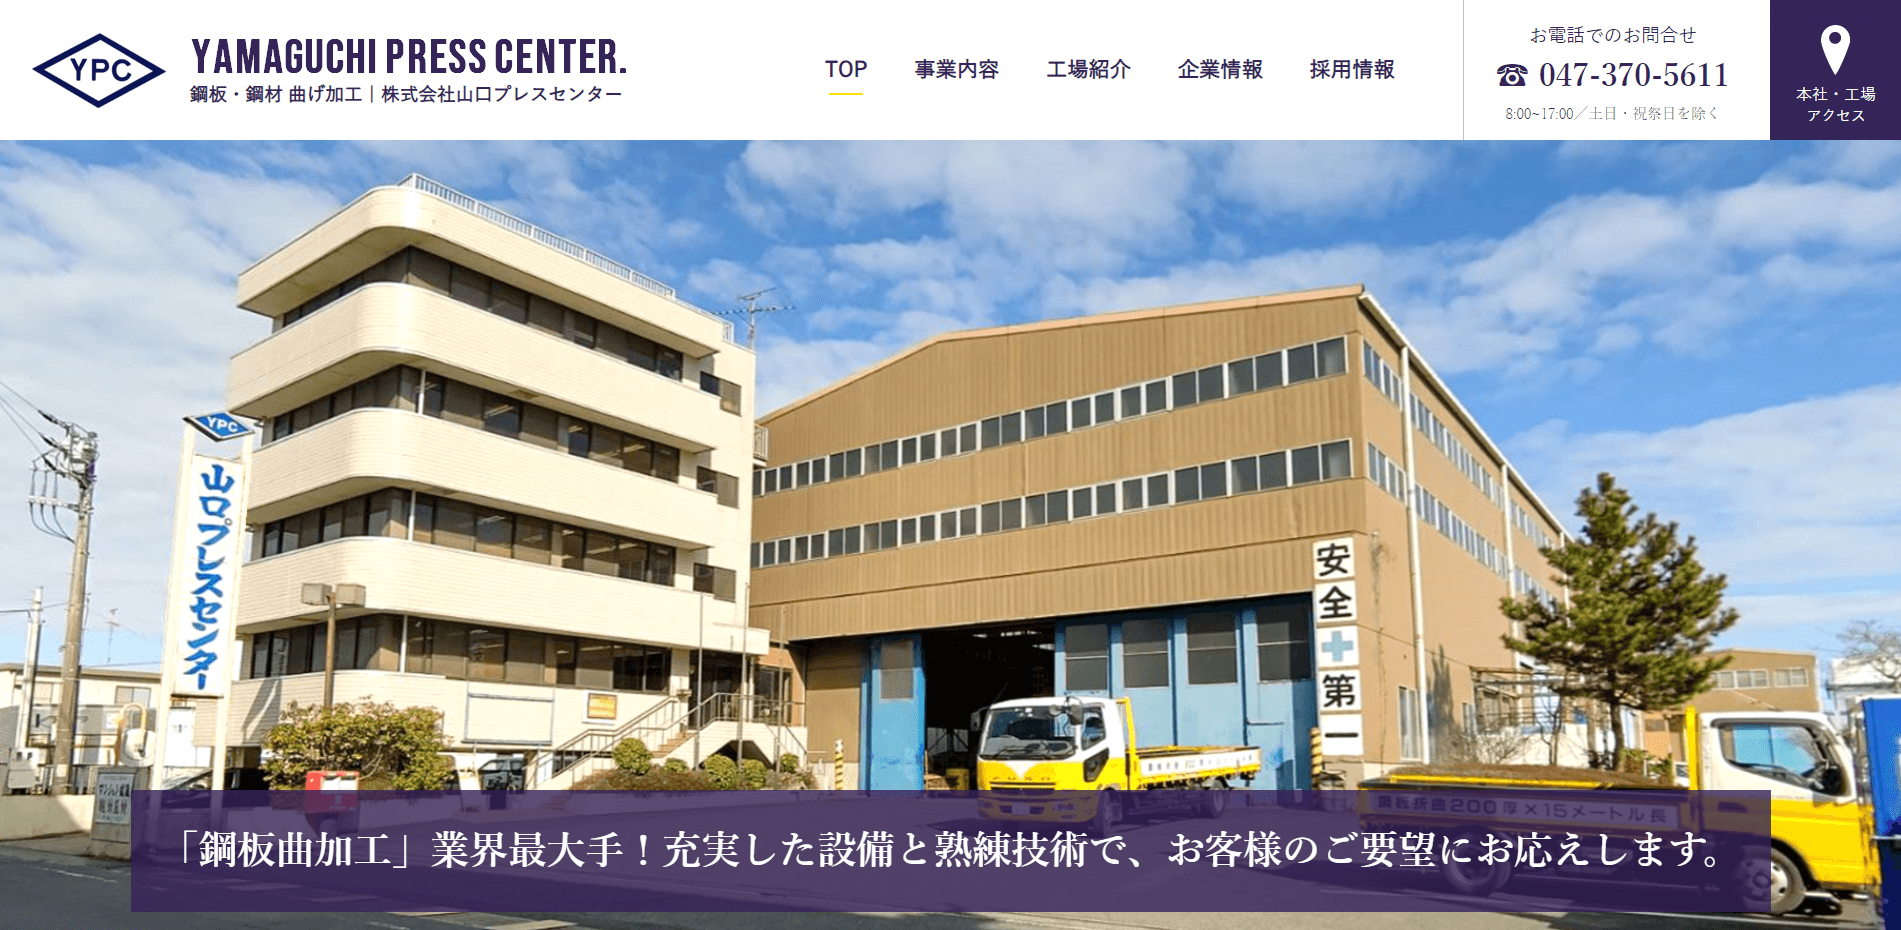 株式会社山口プレスセンター様のホームページ画像